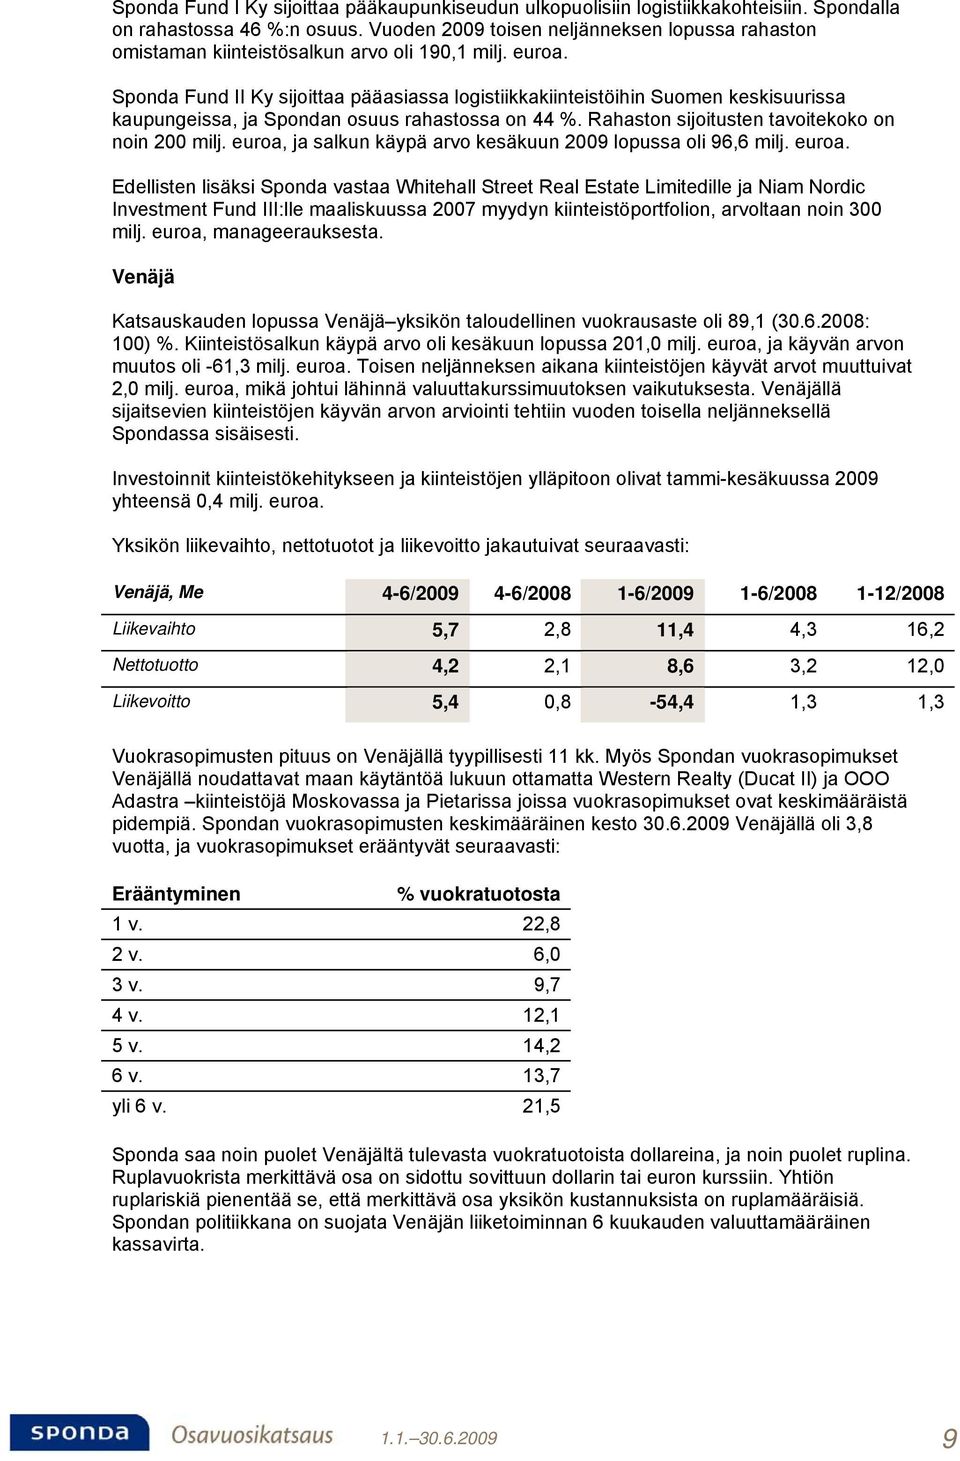 Sponda Fund II Ky sijoittaa pääasiassa logistiikkakiinteistöihin Suomen keskisuurissa kaupungeissa, ja Spondan osuus rahastossa on 44 %. Rahaston sijoitusten tavoitekoko on noin 200 milj.